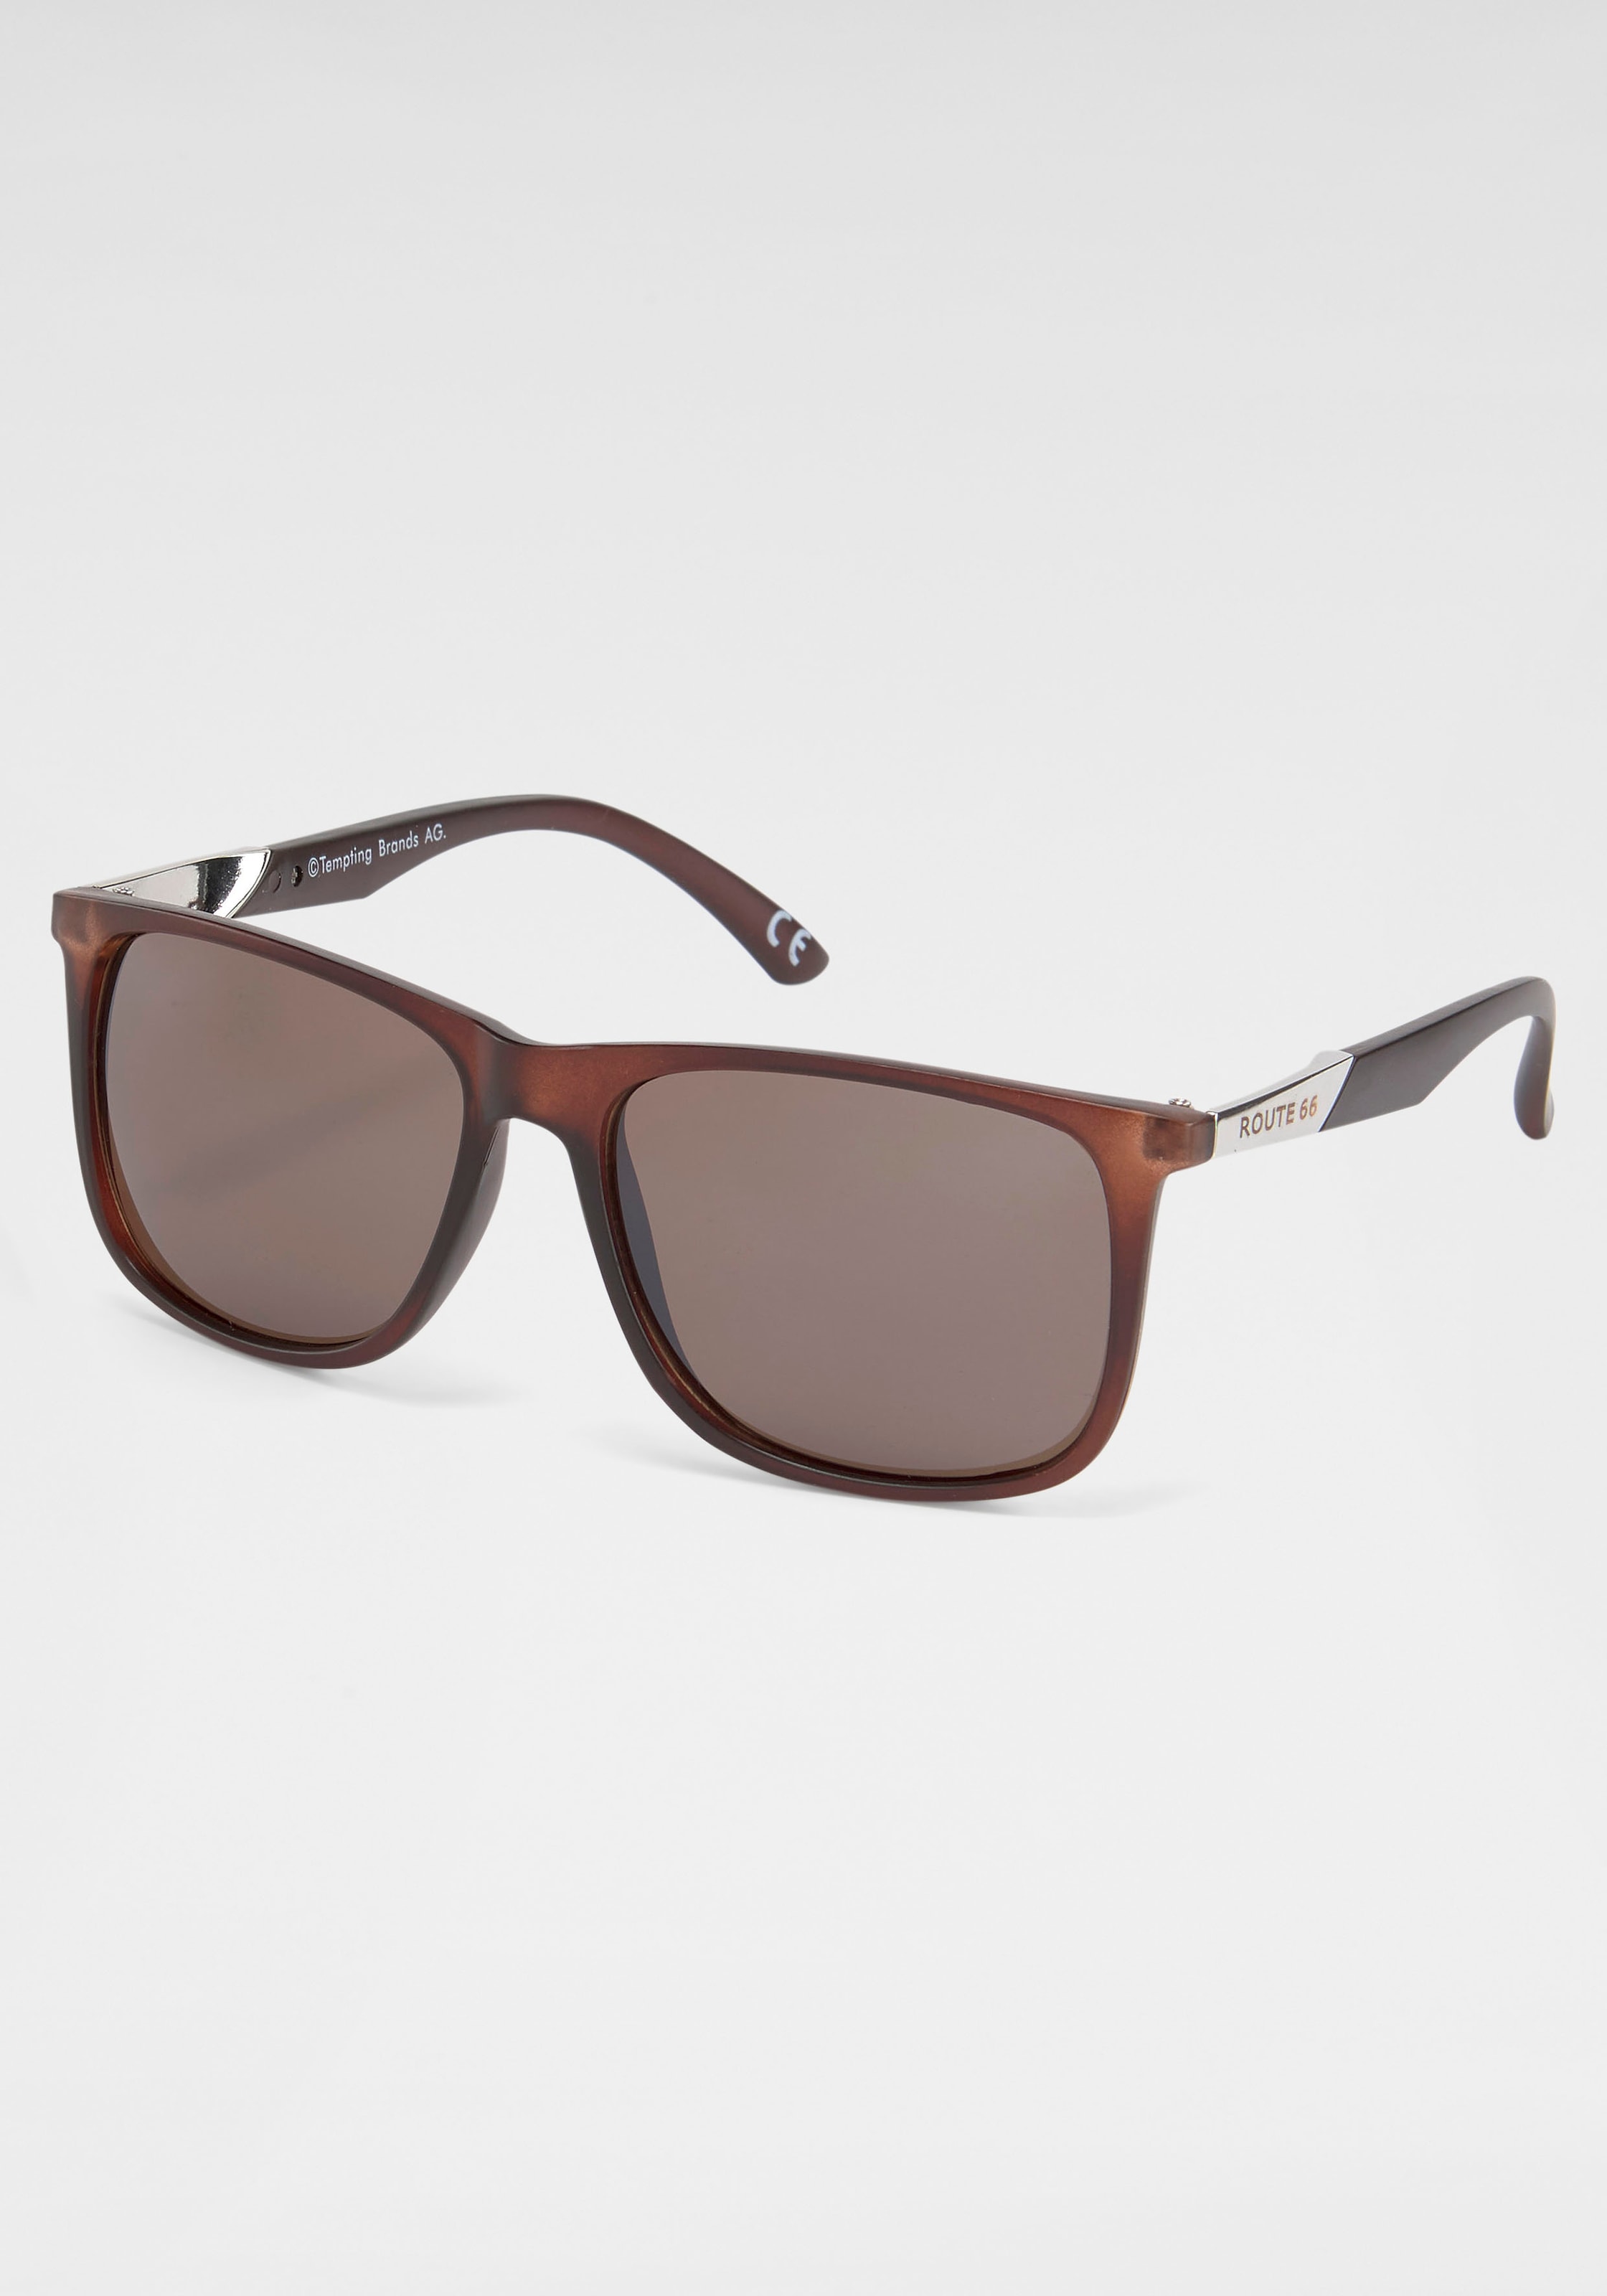 catwalk Eyewear Sonnenbrille online shoppen OTTO bei